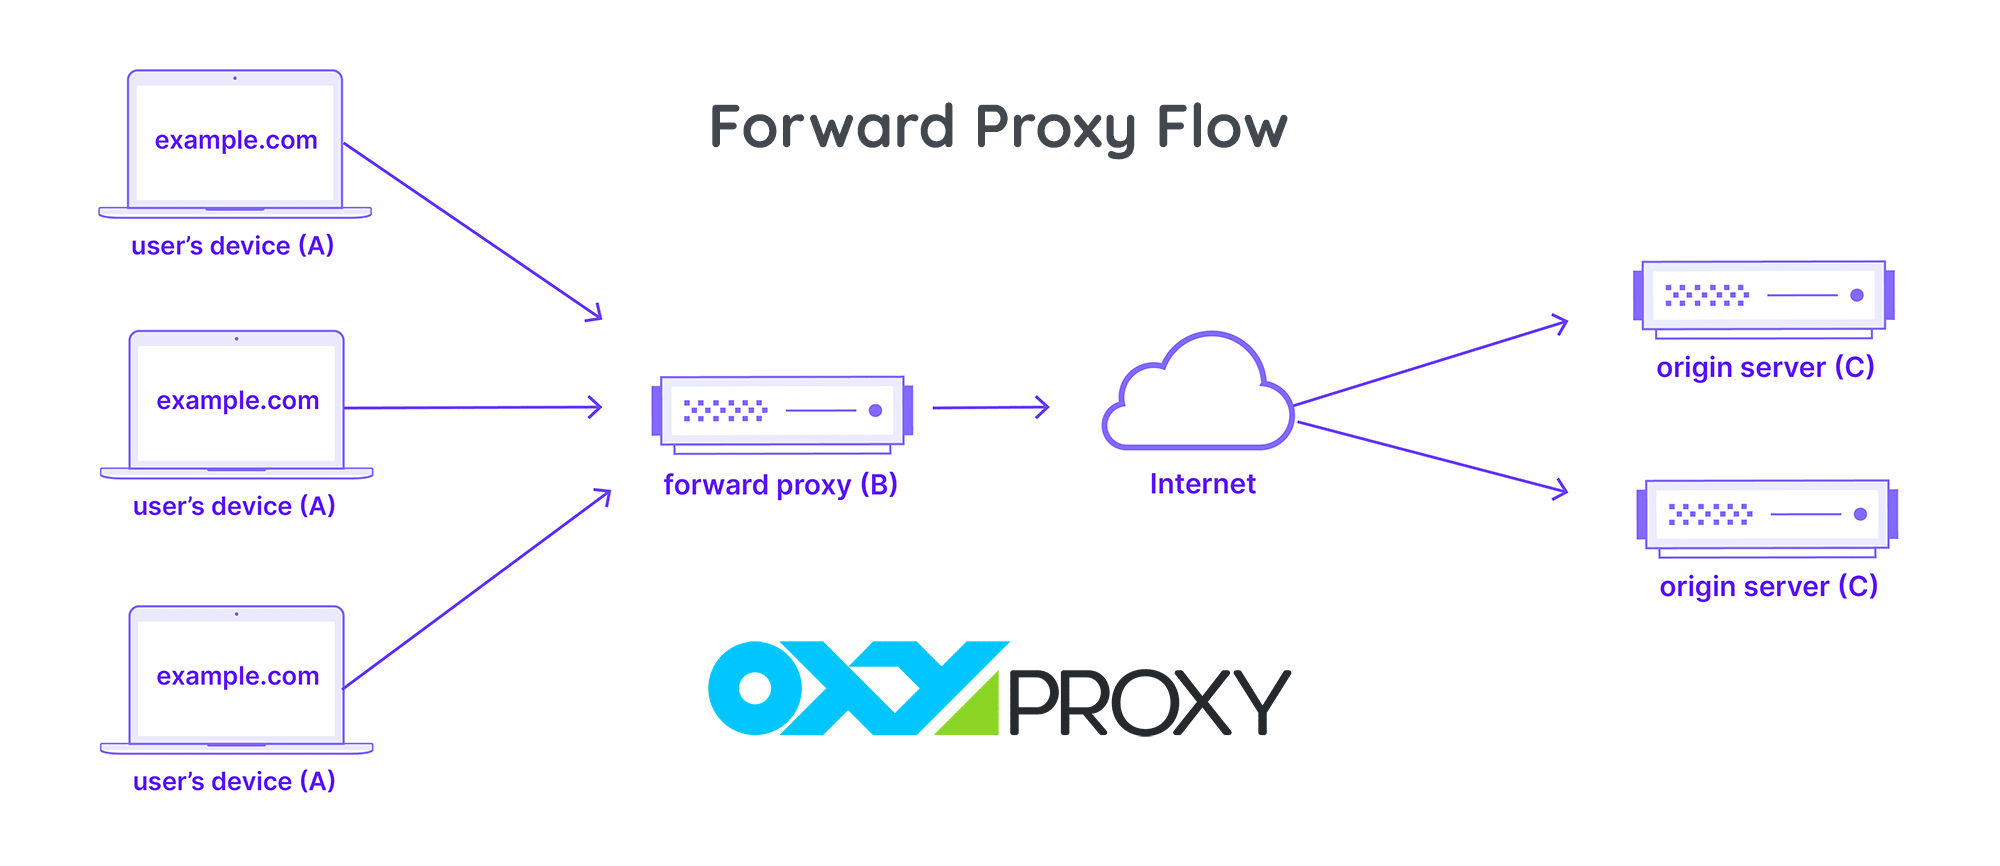 Forward Proxy Flow